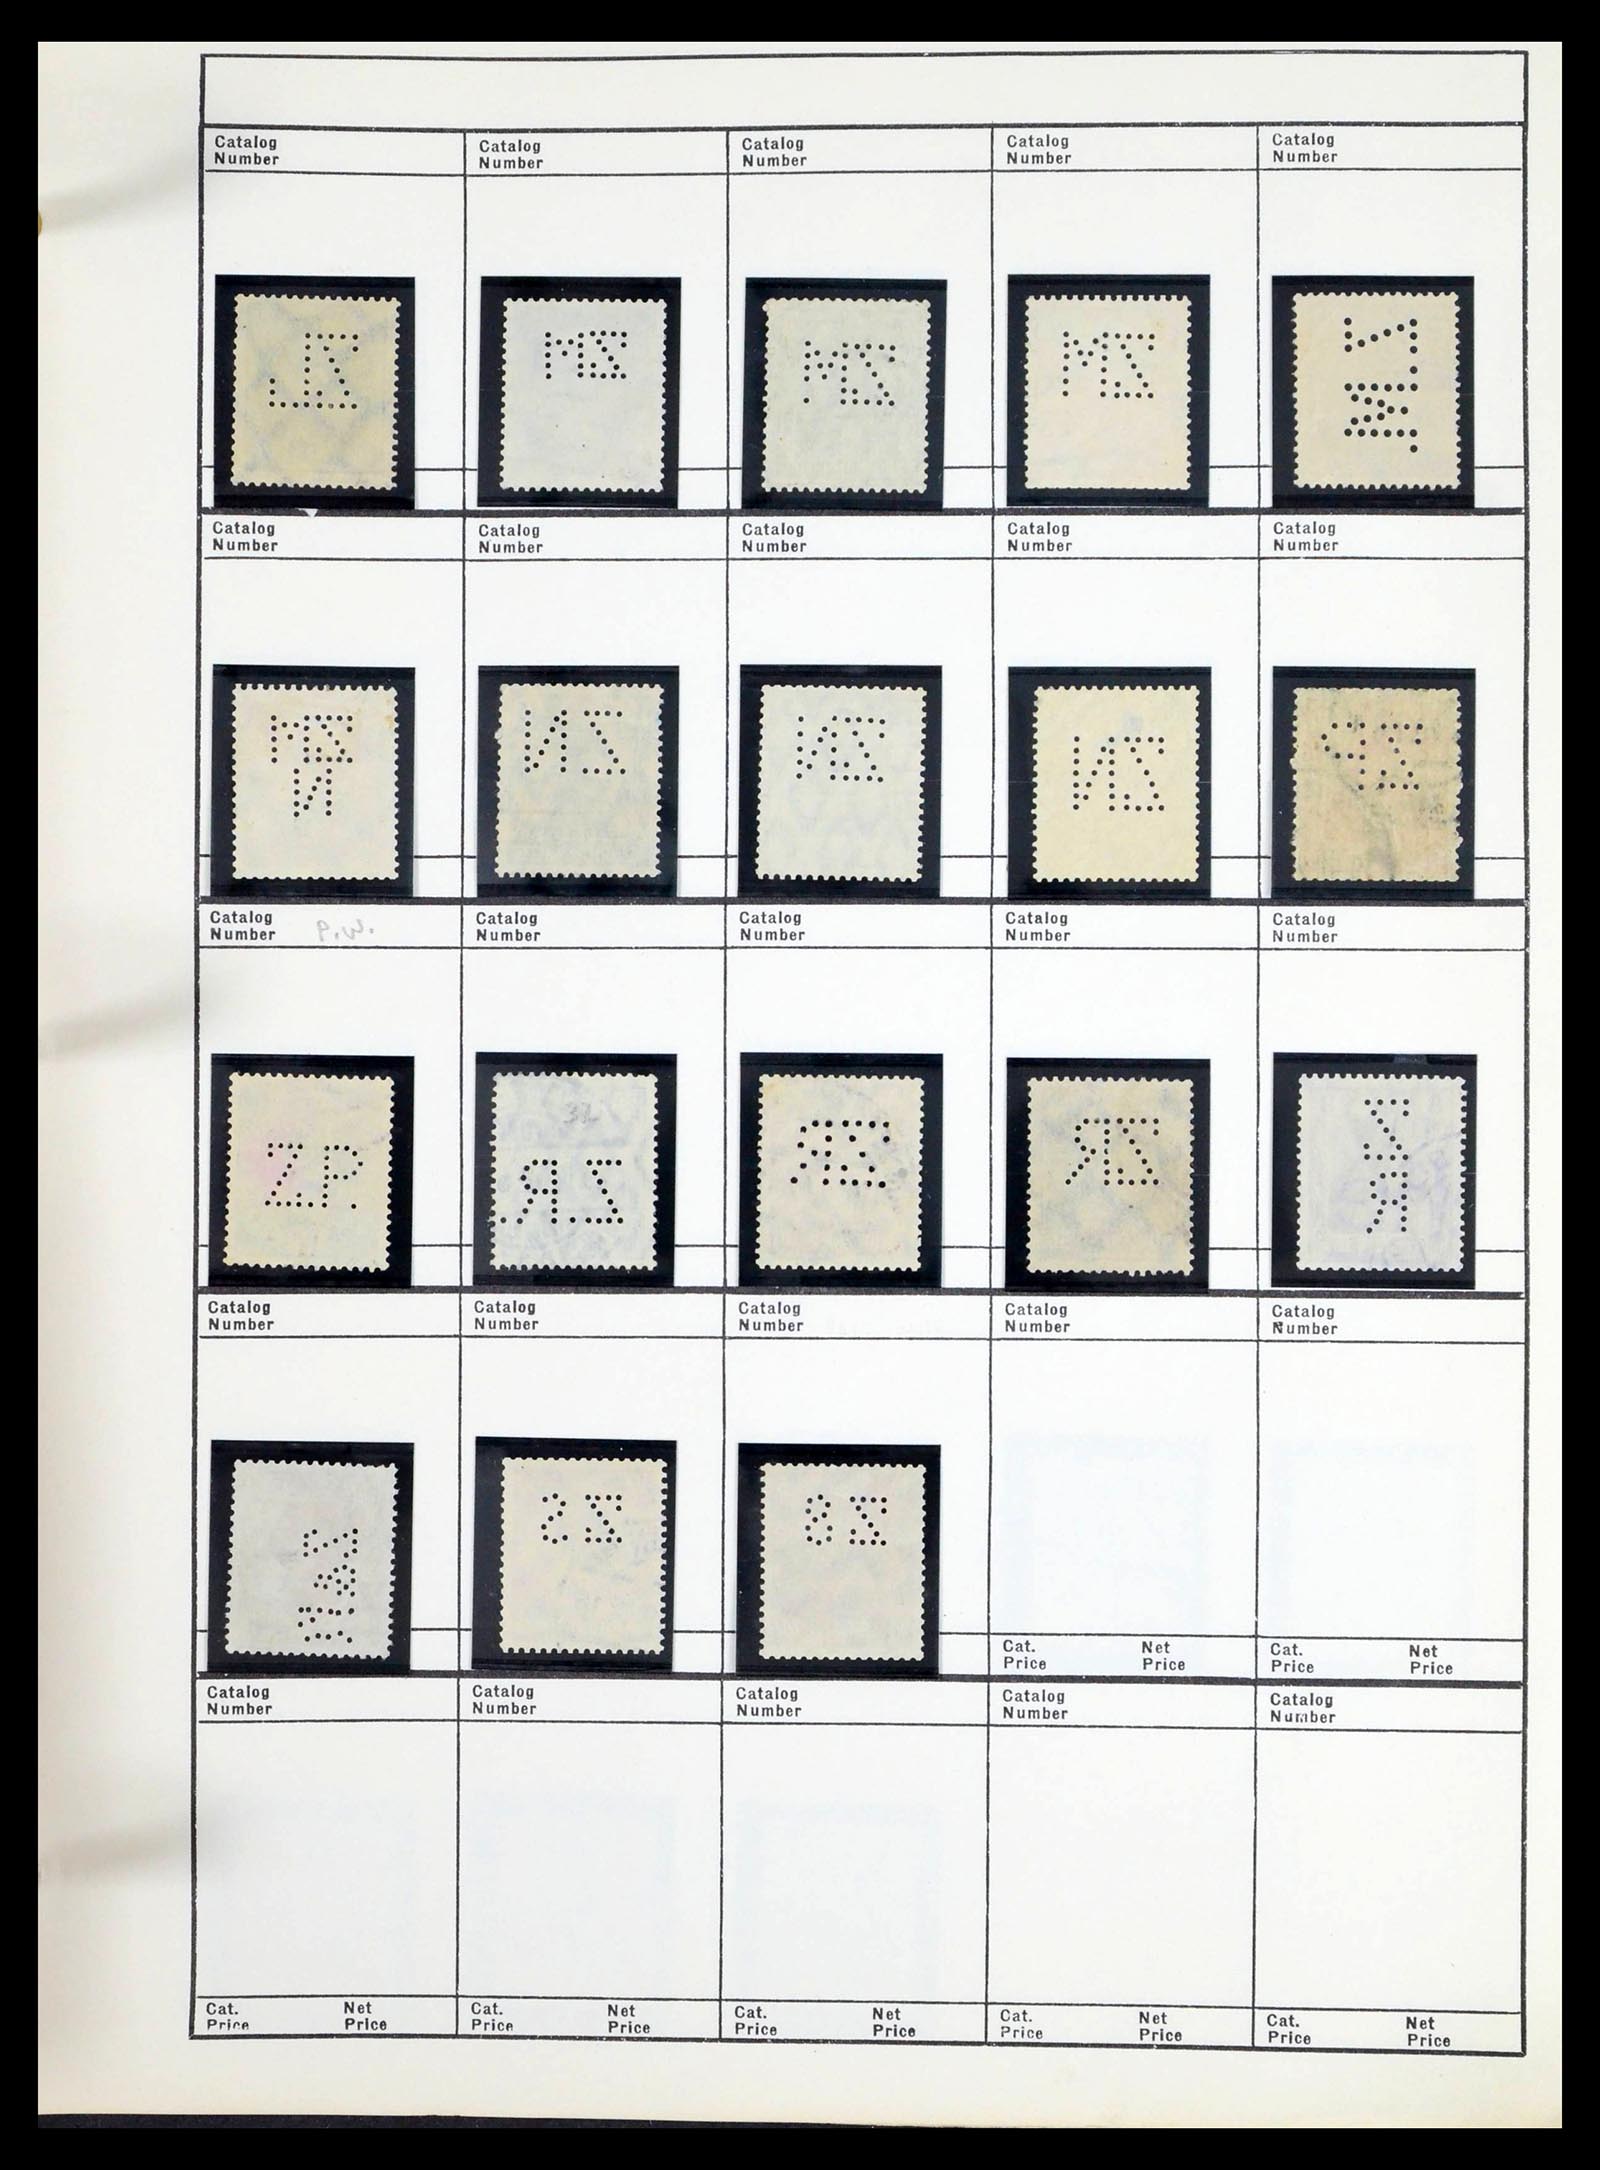 39480 0591 - Stamp collection 39480 German Reich perfins 1880-1955.